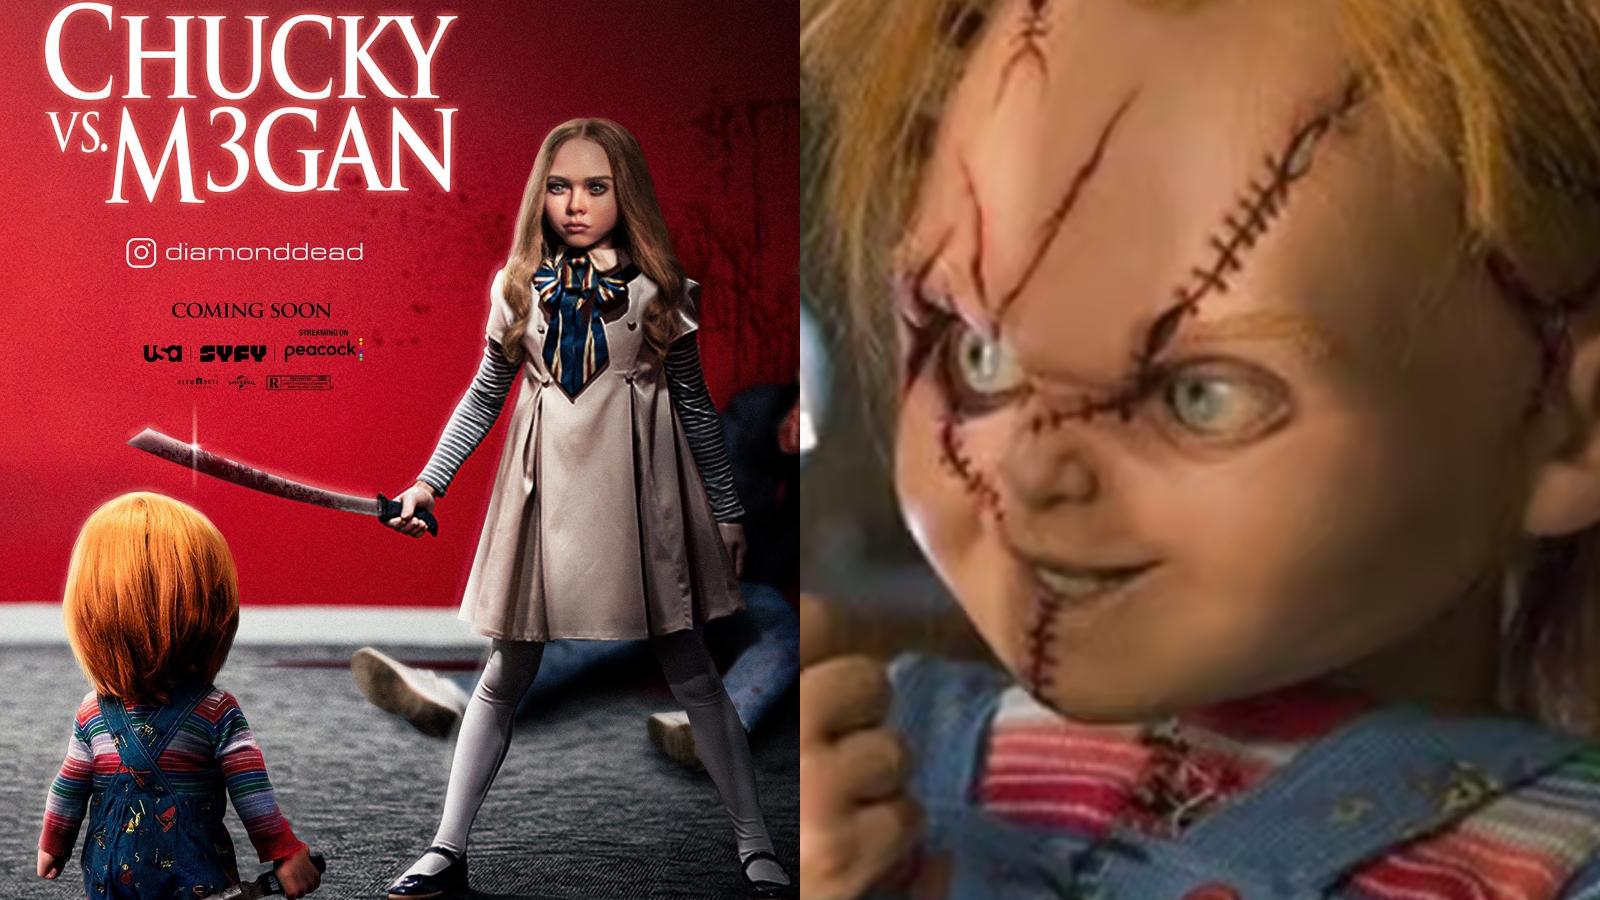 m3gan vs chucky movie poster